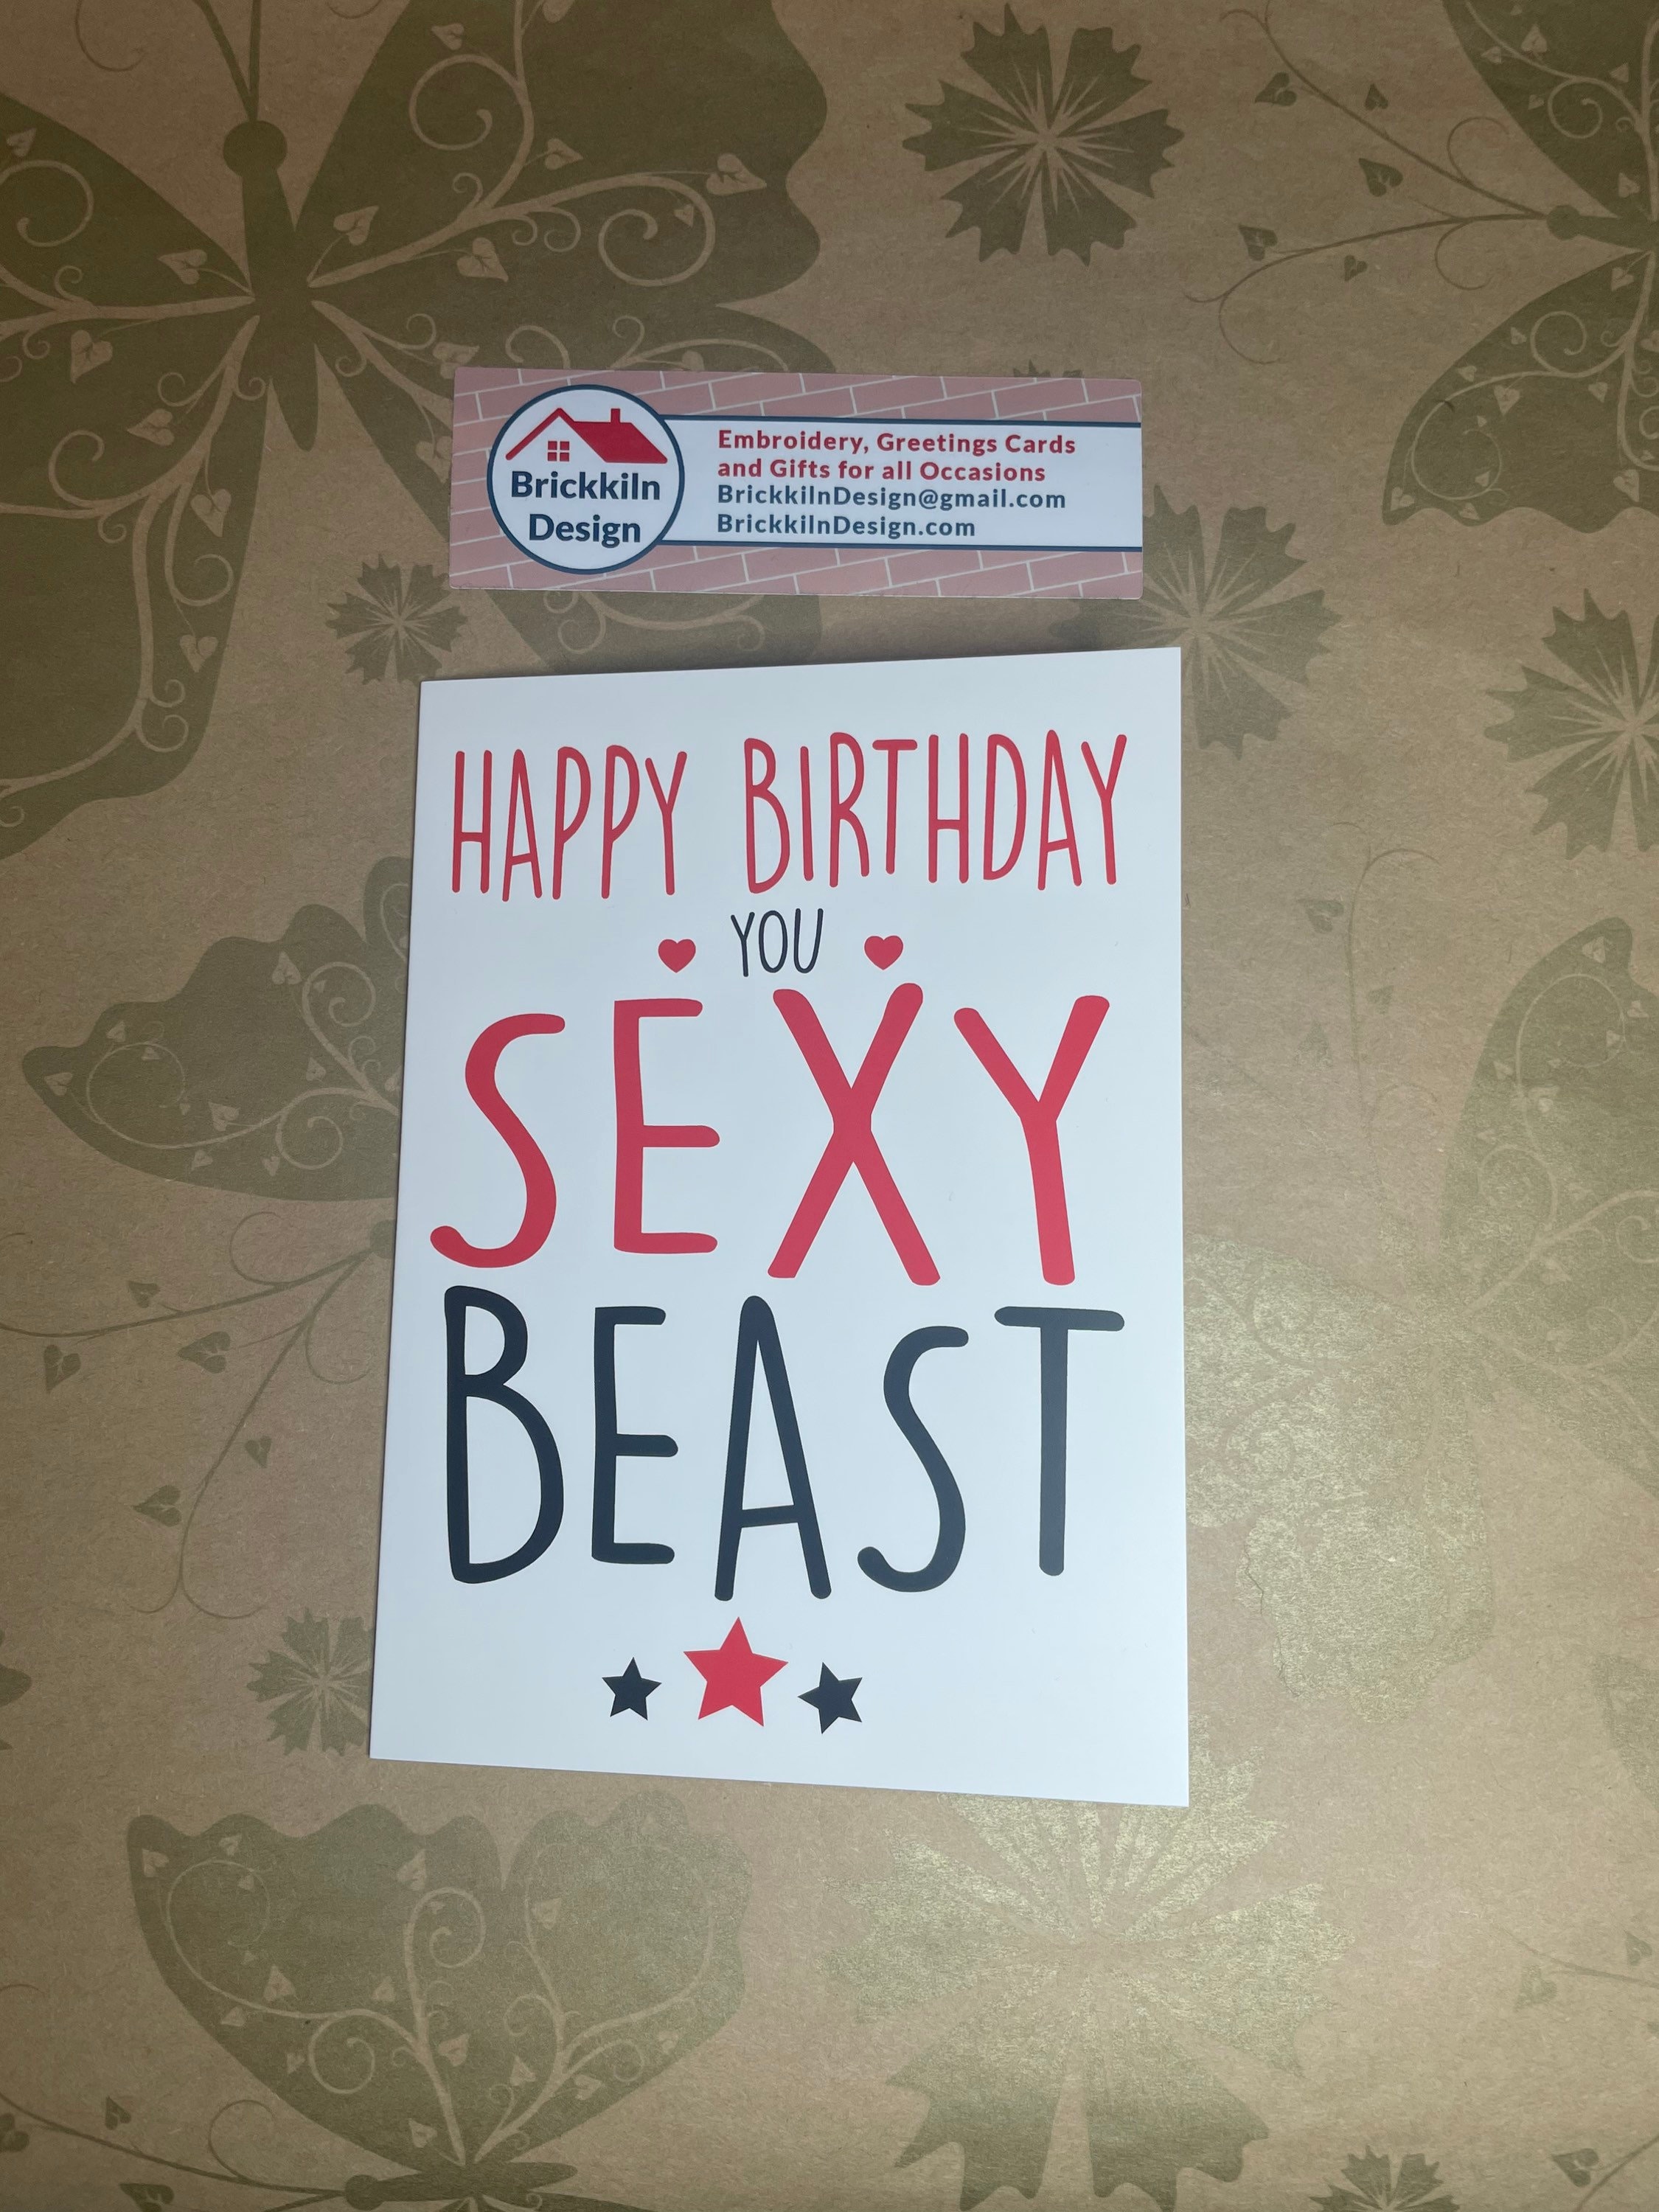 Happy Birthday You Sexy Bearded Man Beast Tumbler - Funny Birthday Gift  Idea